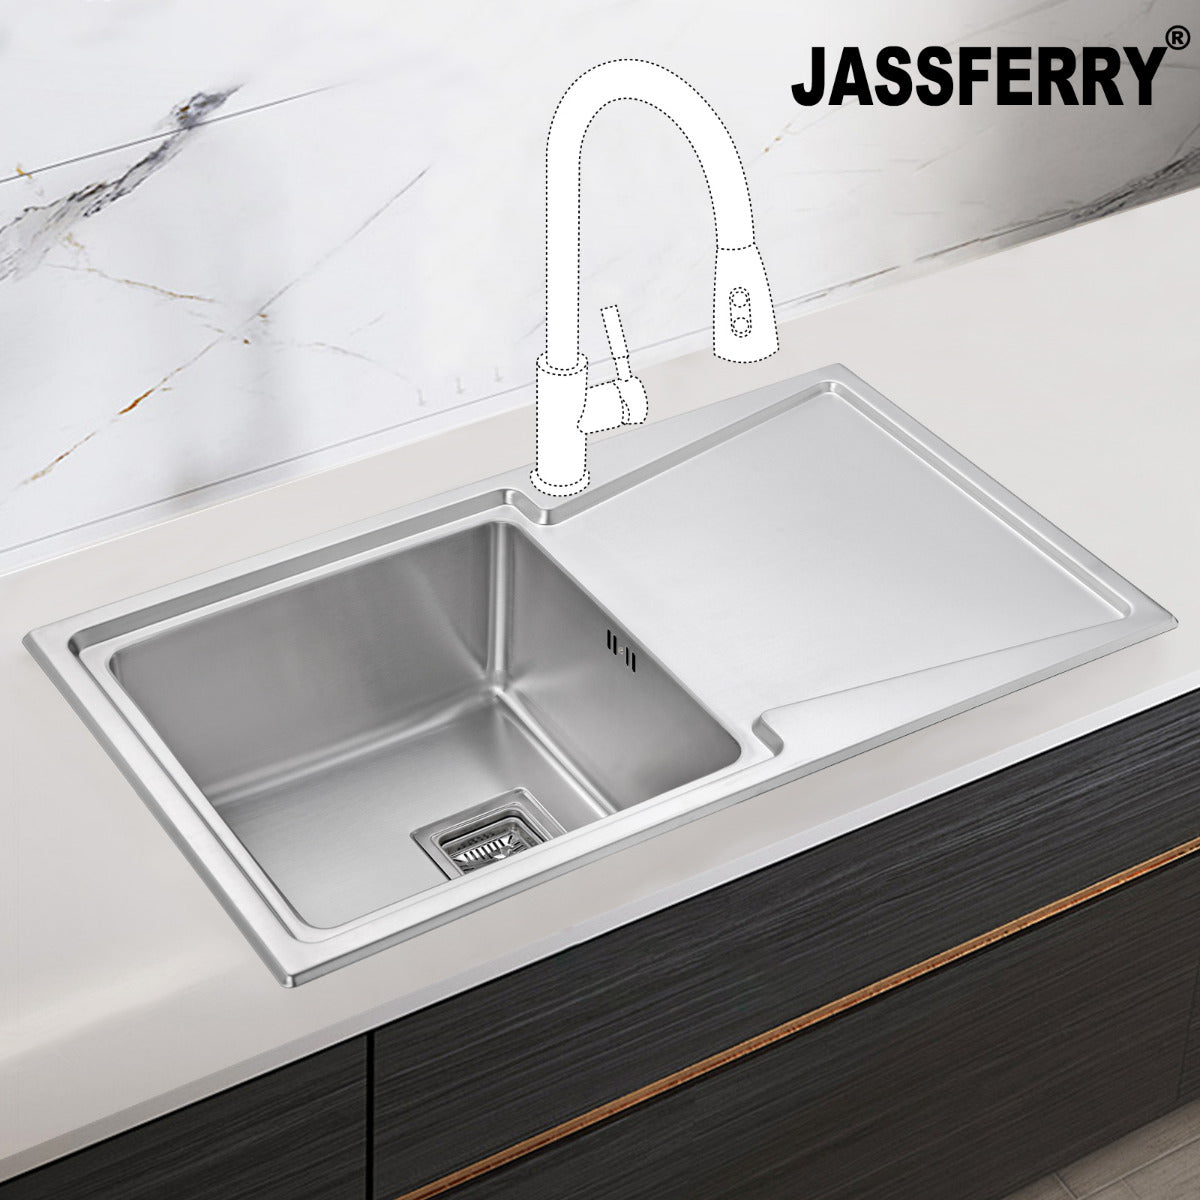 JassferryJASSFERRY Brilliant Stainless Steel Kitchen Sink Single 1 Bowl Righthand Drainer - 671Kitchen Sinks